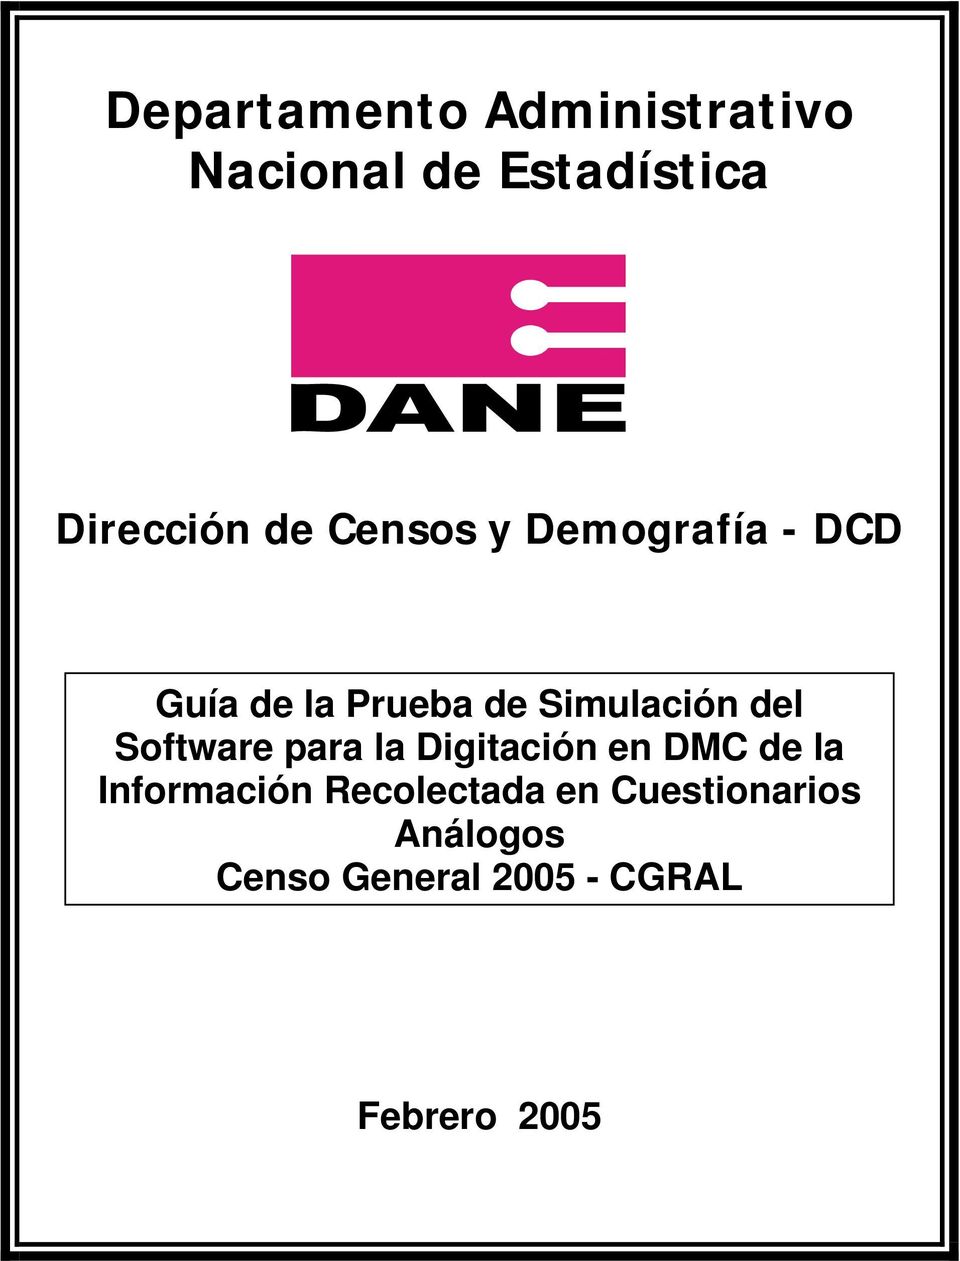 Software para la Digitación en DMC de la Información Recolectada